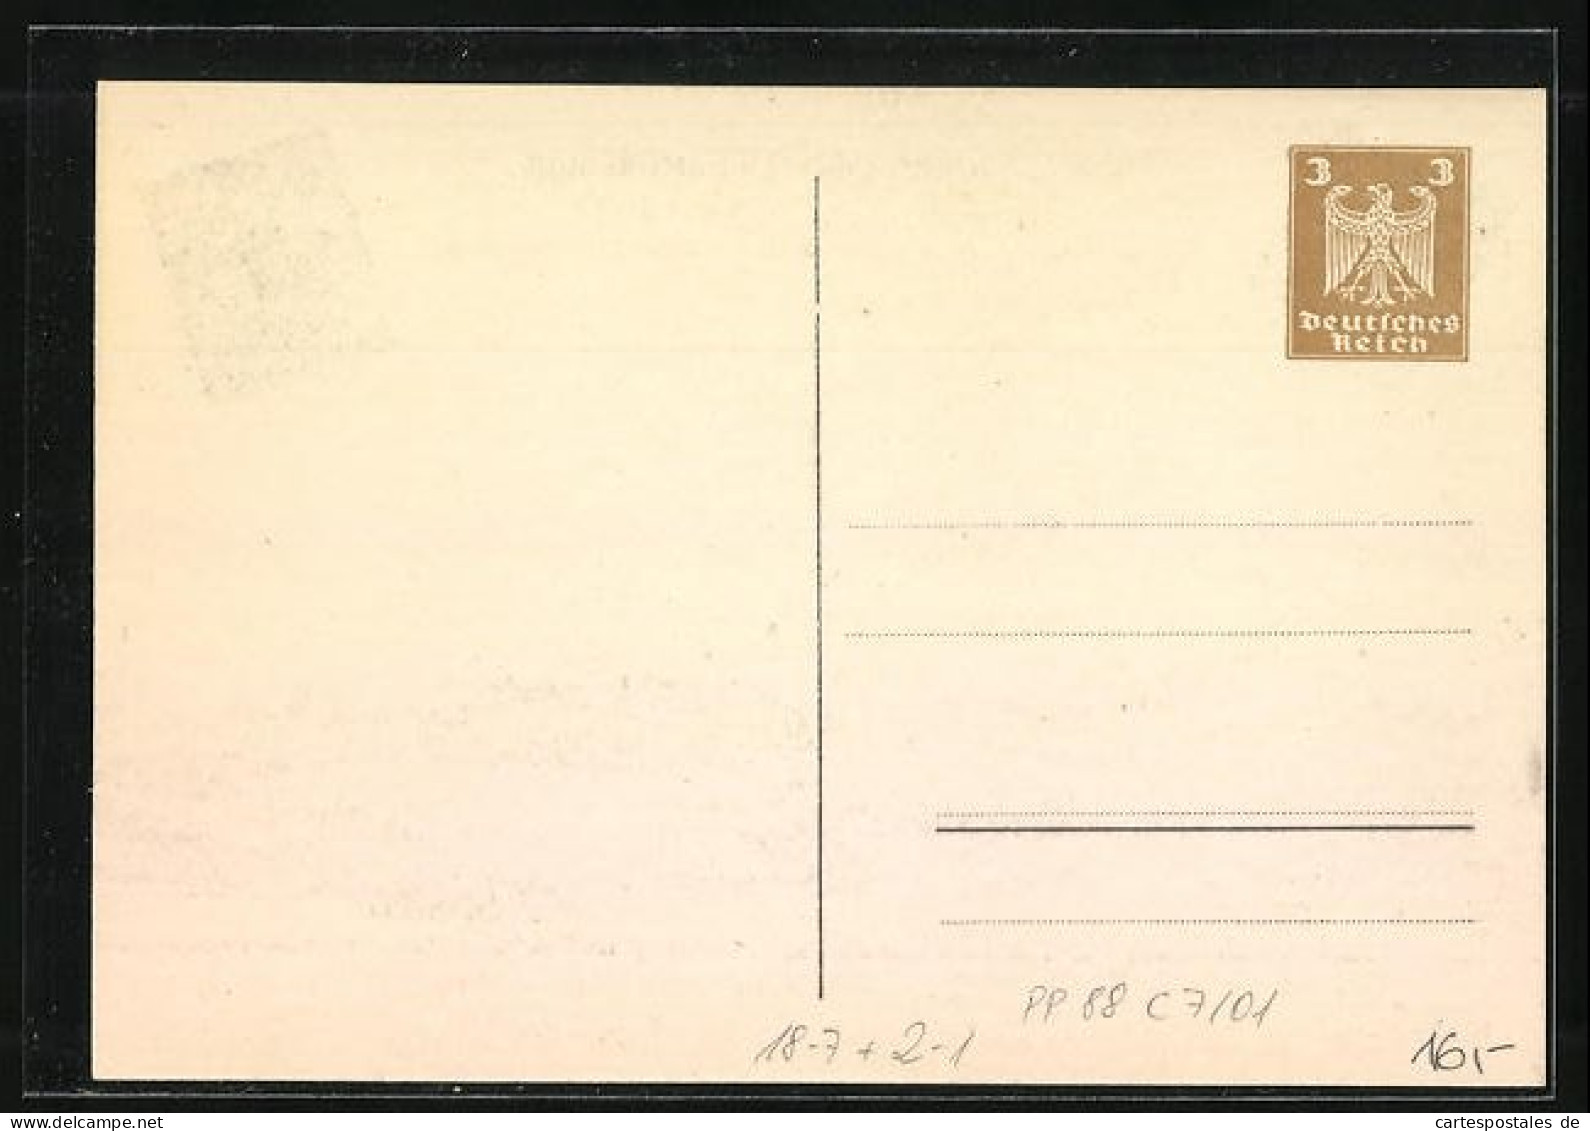 Künstler-AK Oggersheim, V. Südwestdeutscher Philatelistentag 1924, Teilansicht, PP 88 C 7 /01, Ganzsache  - Briefmarken (Abbildungen)